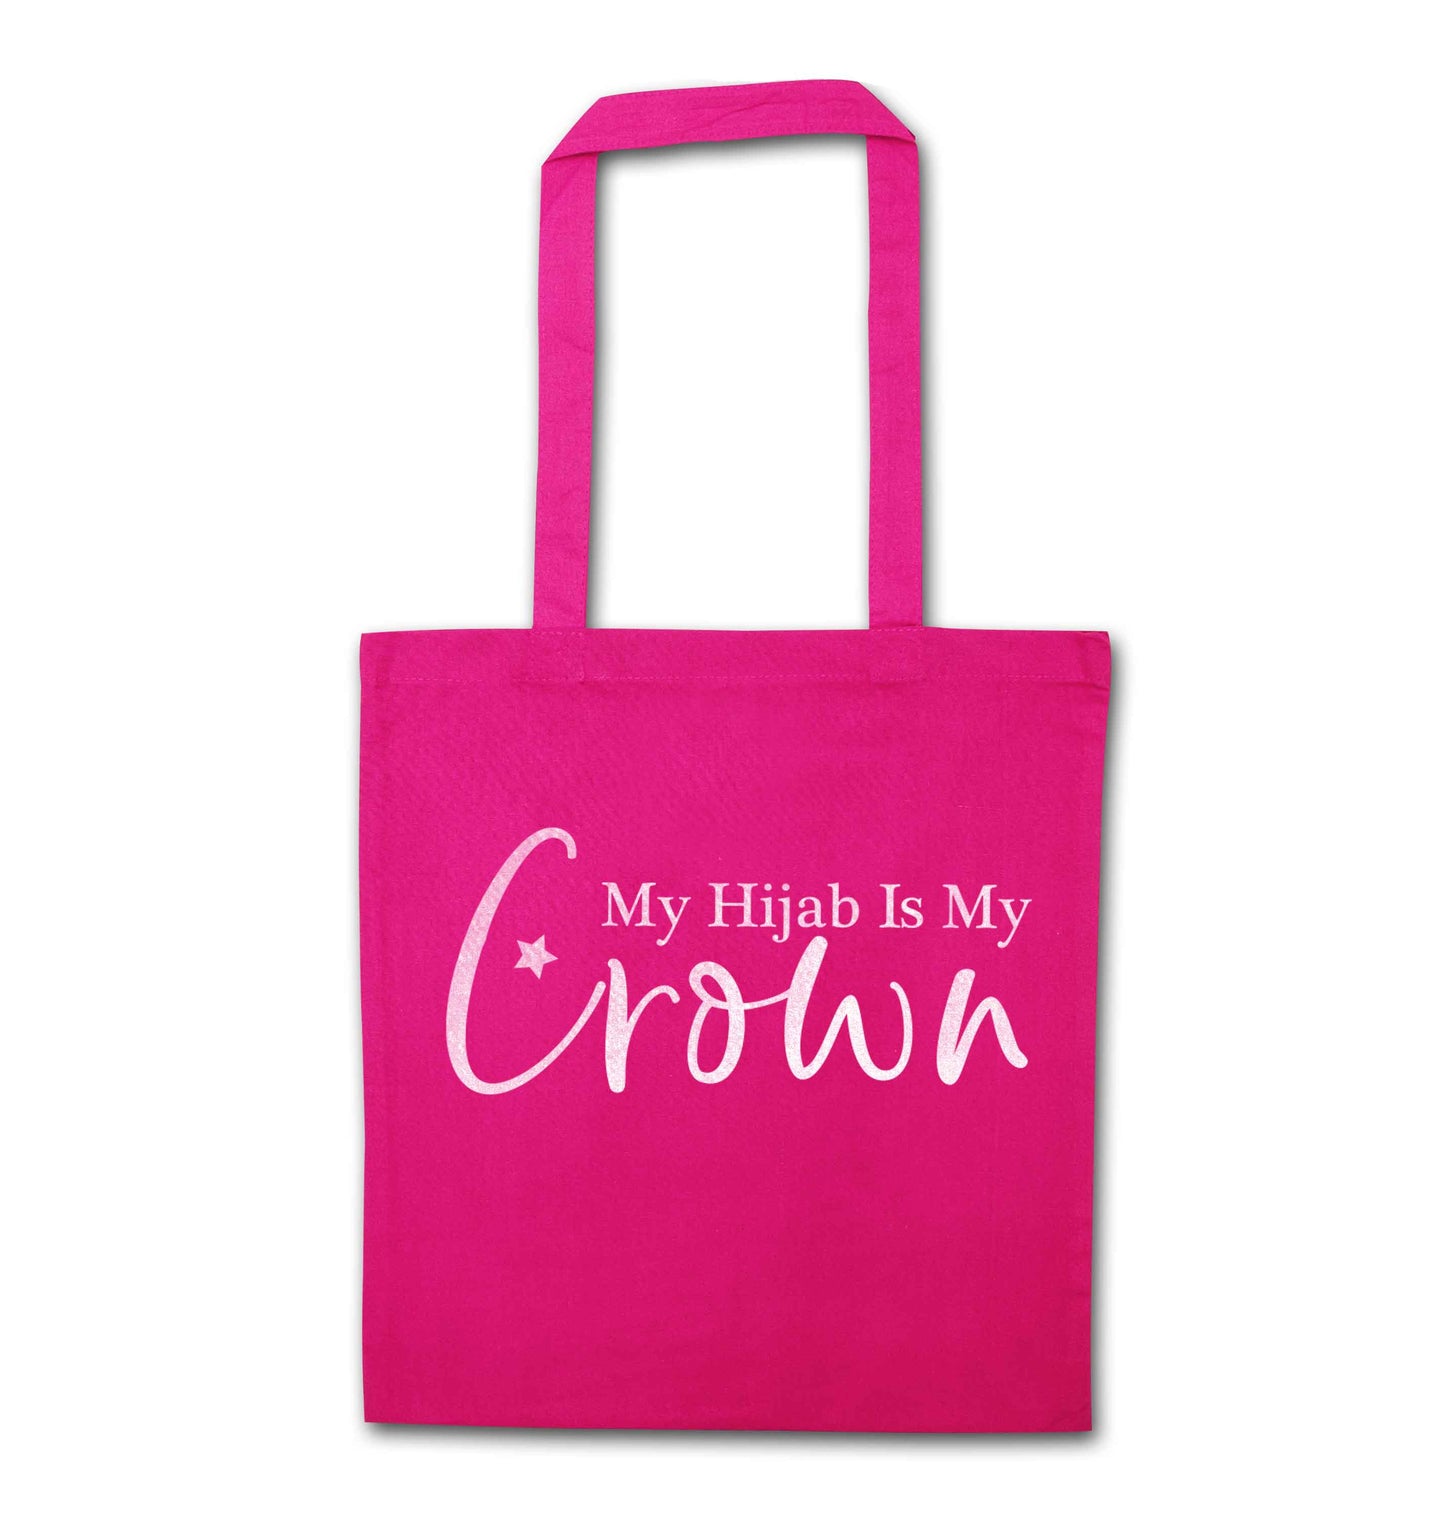 My hijab is my crown pink tote bag